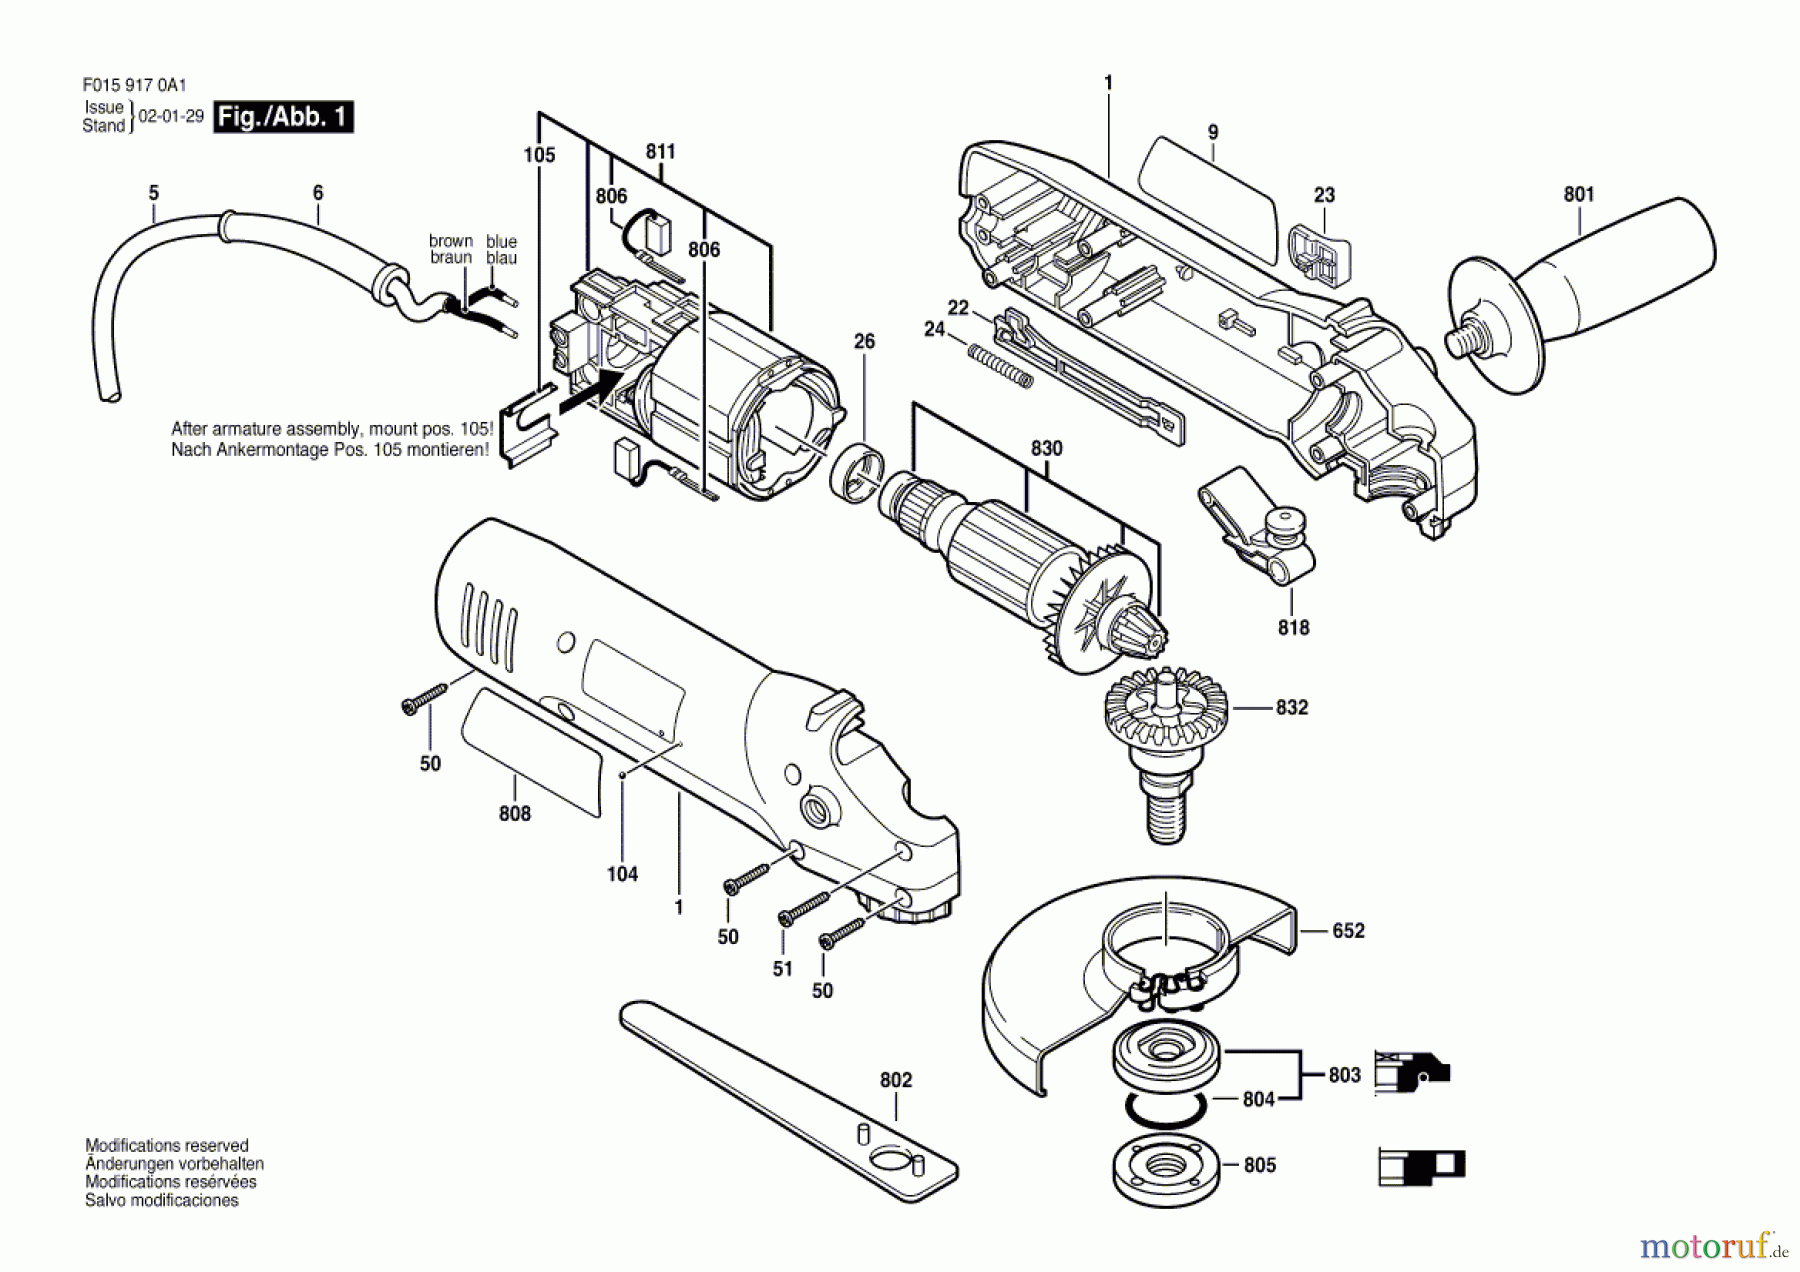  Bosch Werkzeug Winkelschleifer 9170 Seite 1